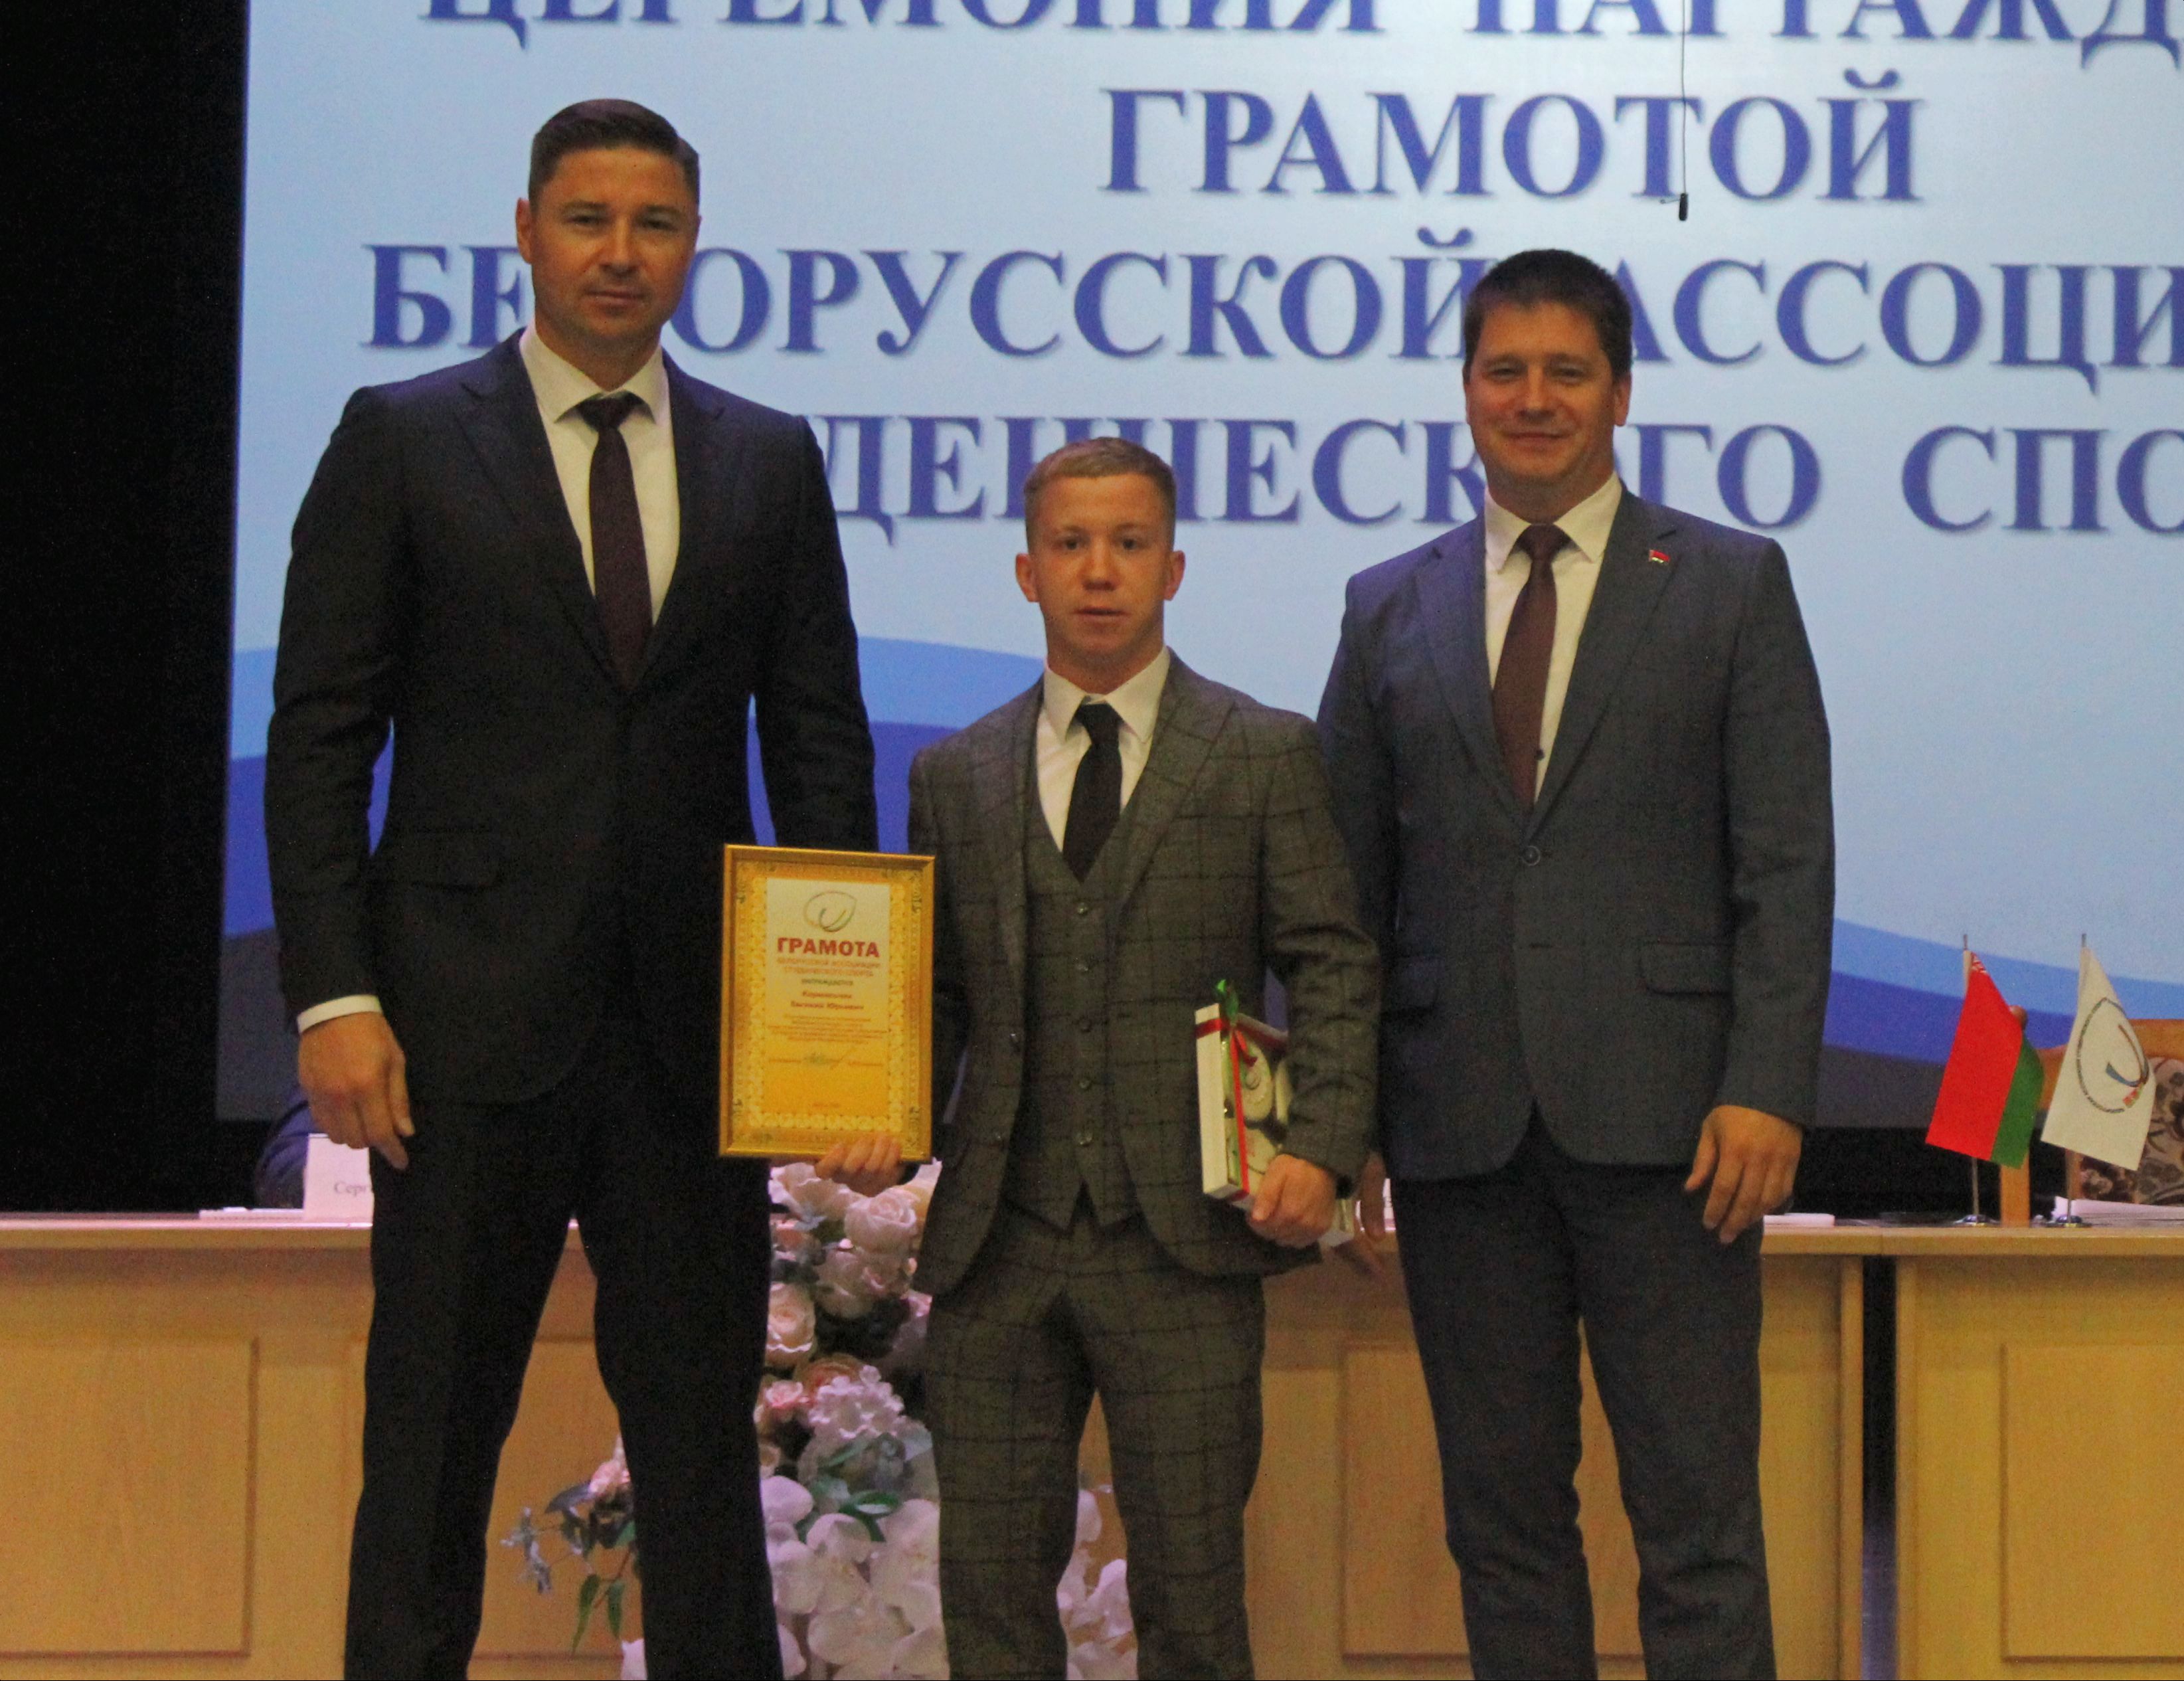 Студент Купаловского университета награжден Грамотой БАСС